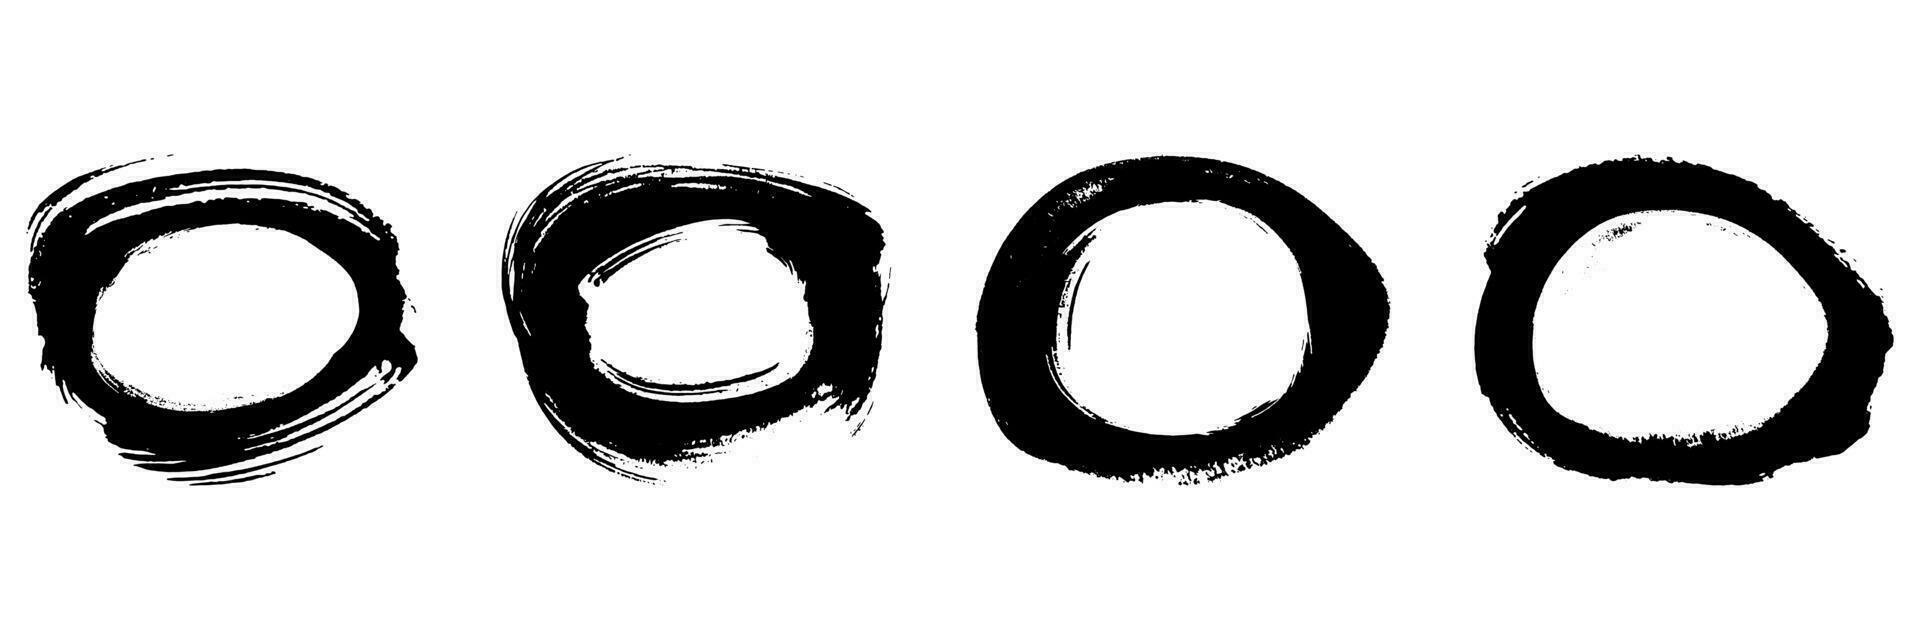 cirkel grunge verf. ronde vorm beroerte inkt kader set. abstract zwart circulaire ontwerp, postzegel grafisch element. vuil borstel symbool verzameling. geïsoleerd vector illustratie.